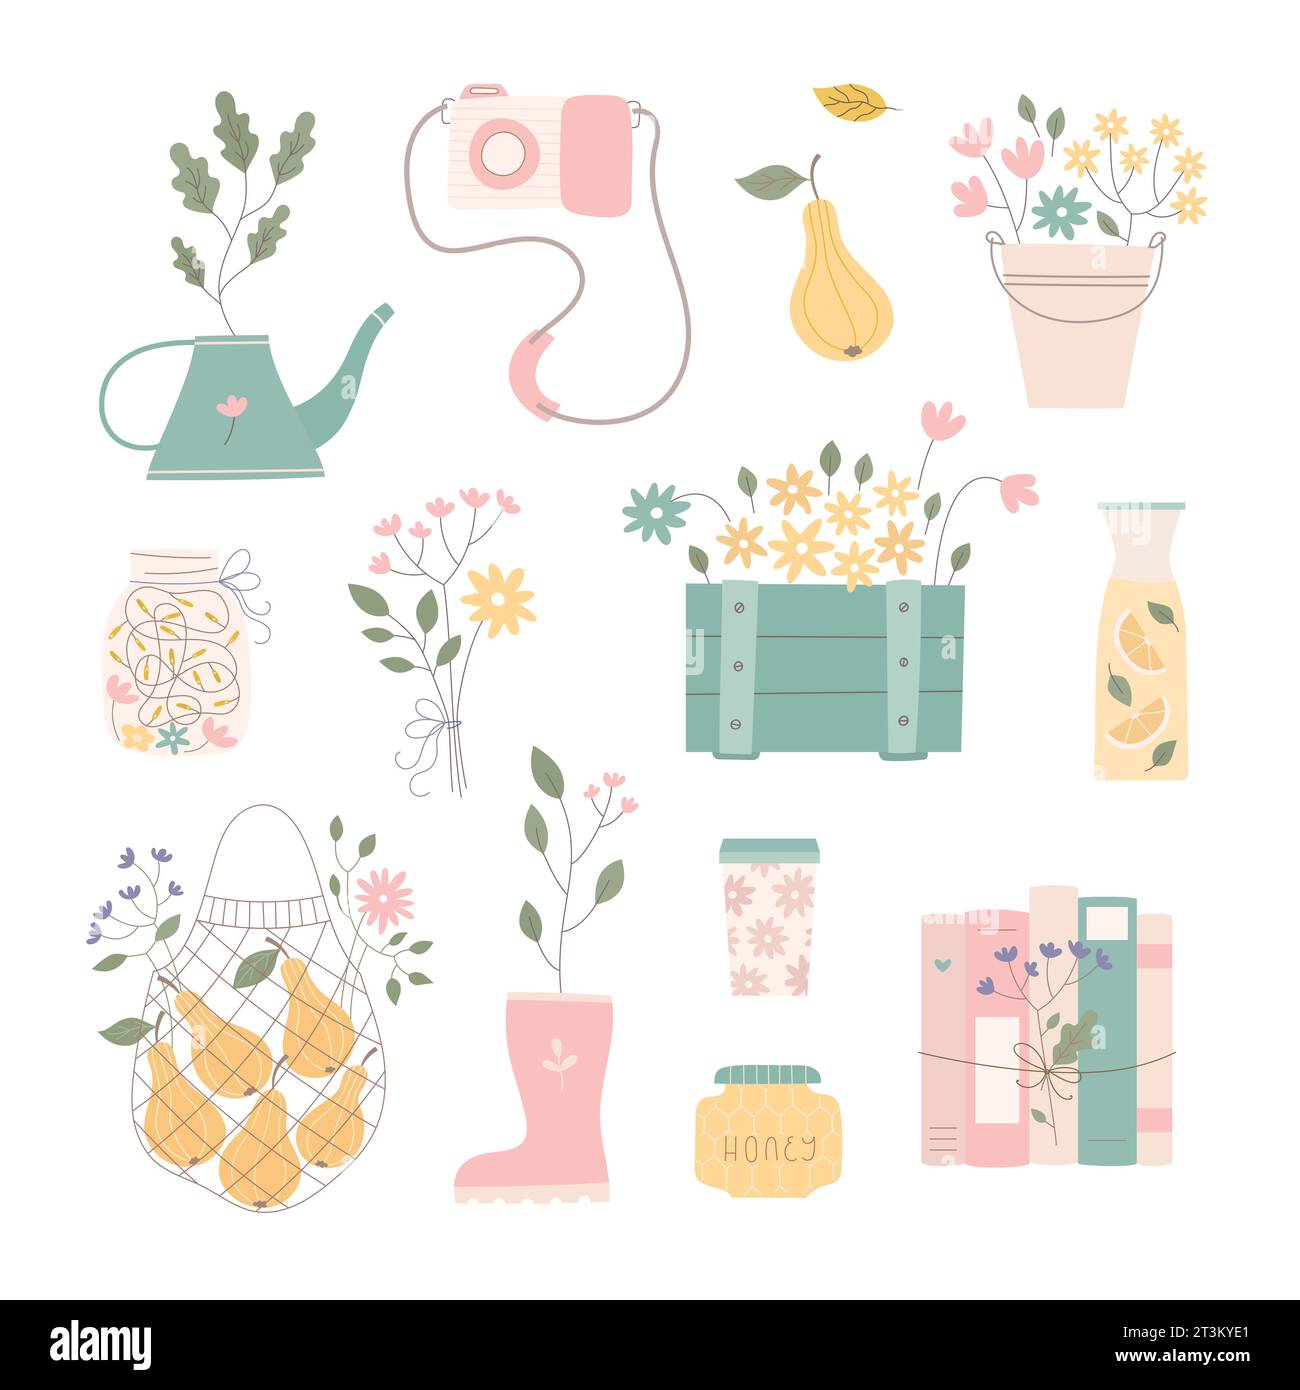 Clipart di oggetti estivi con barattolo, composizioni di fiori, raccolta, libri, piante. Set di semplici illustrazioni vecor. Illustrazione Vettoriale